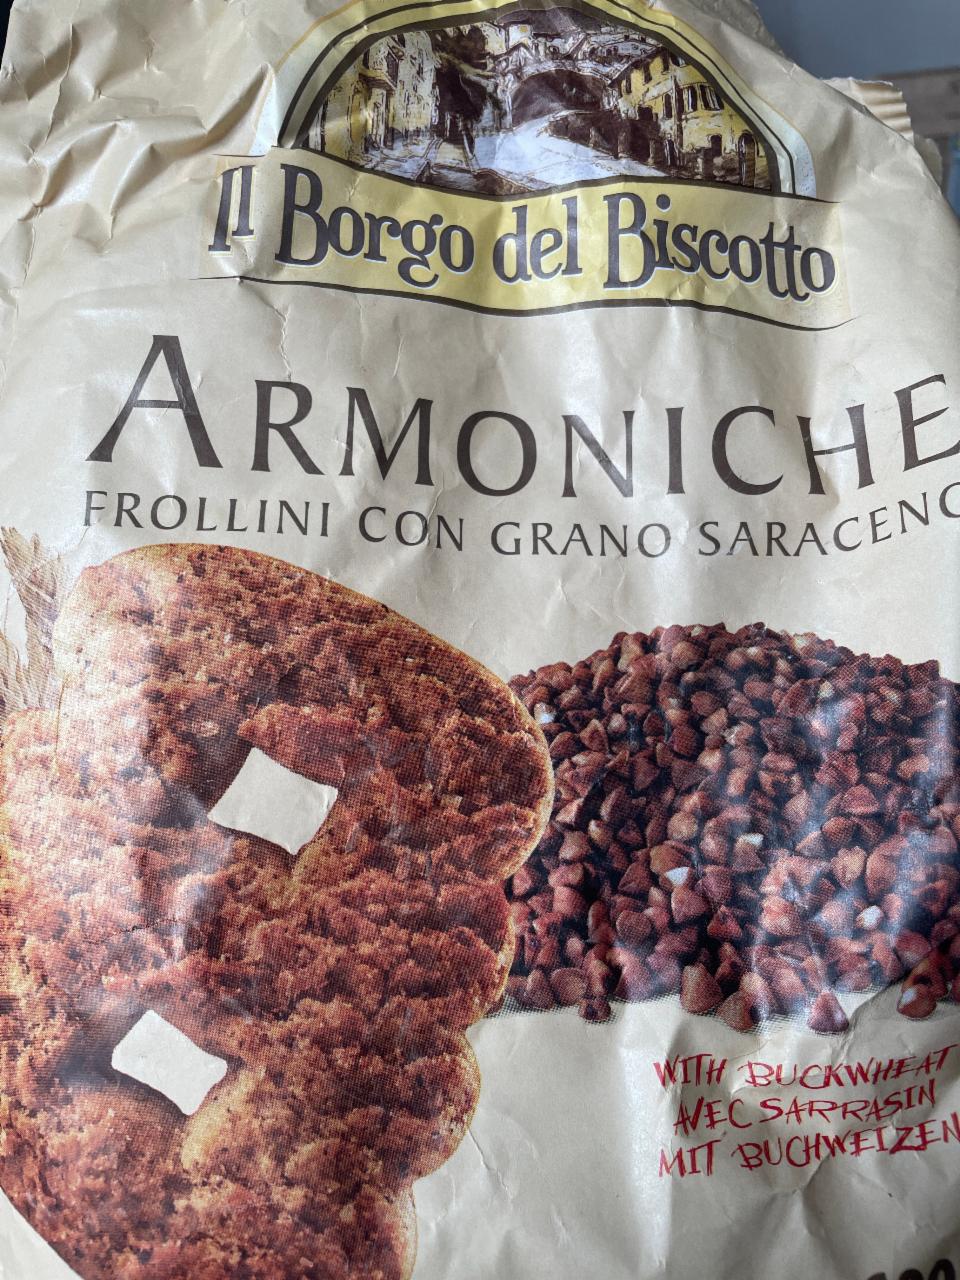 Fotografie - Armoniche Frollini con Grano Saraceno Il Borgo del Biscotto